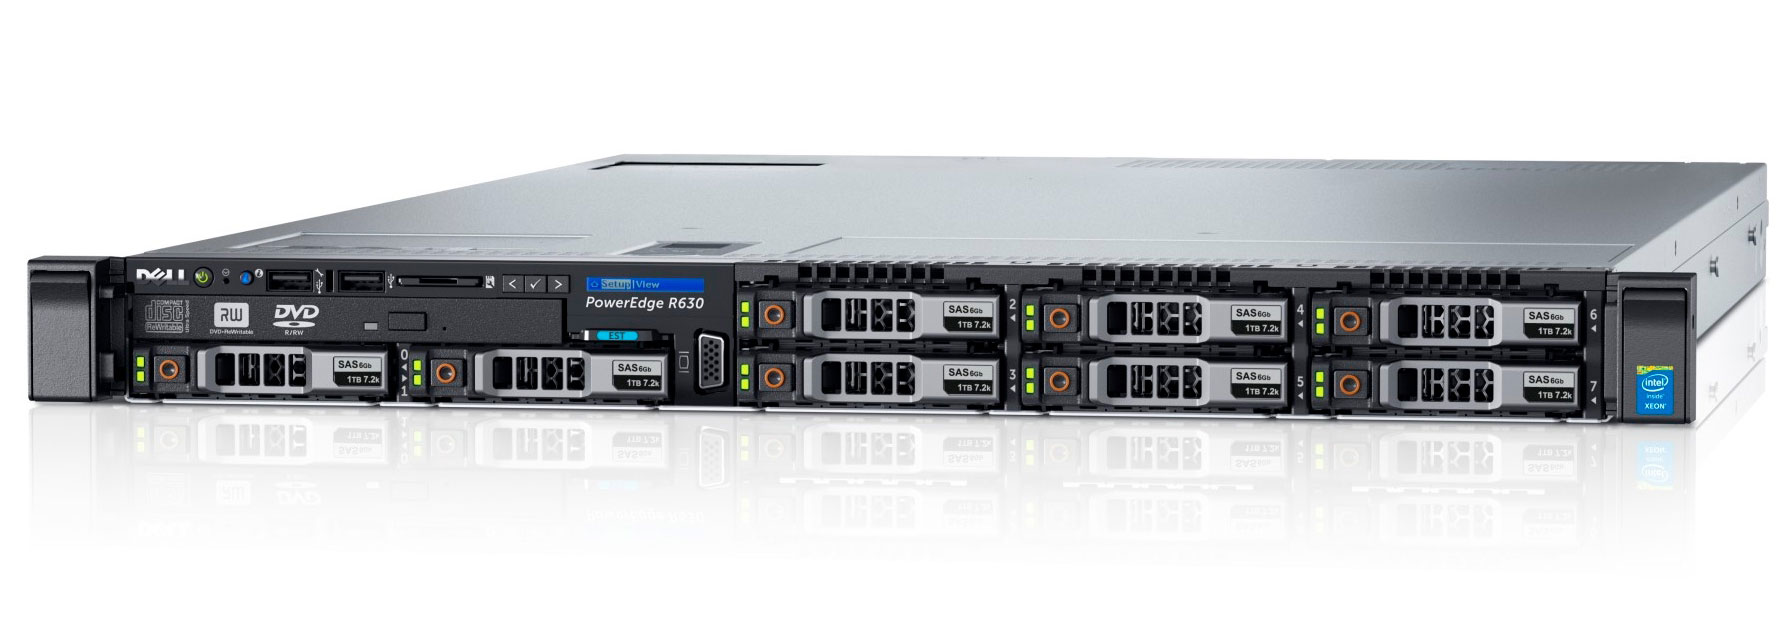 Сервер Dell PowerEdge r630 1U unit Rack Server r630 intel xeon e5 rackmount dell servidor серверные решения 1с серверы купить цена